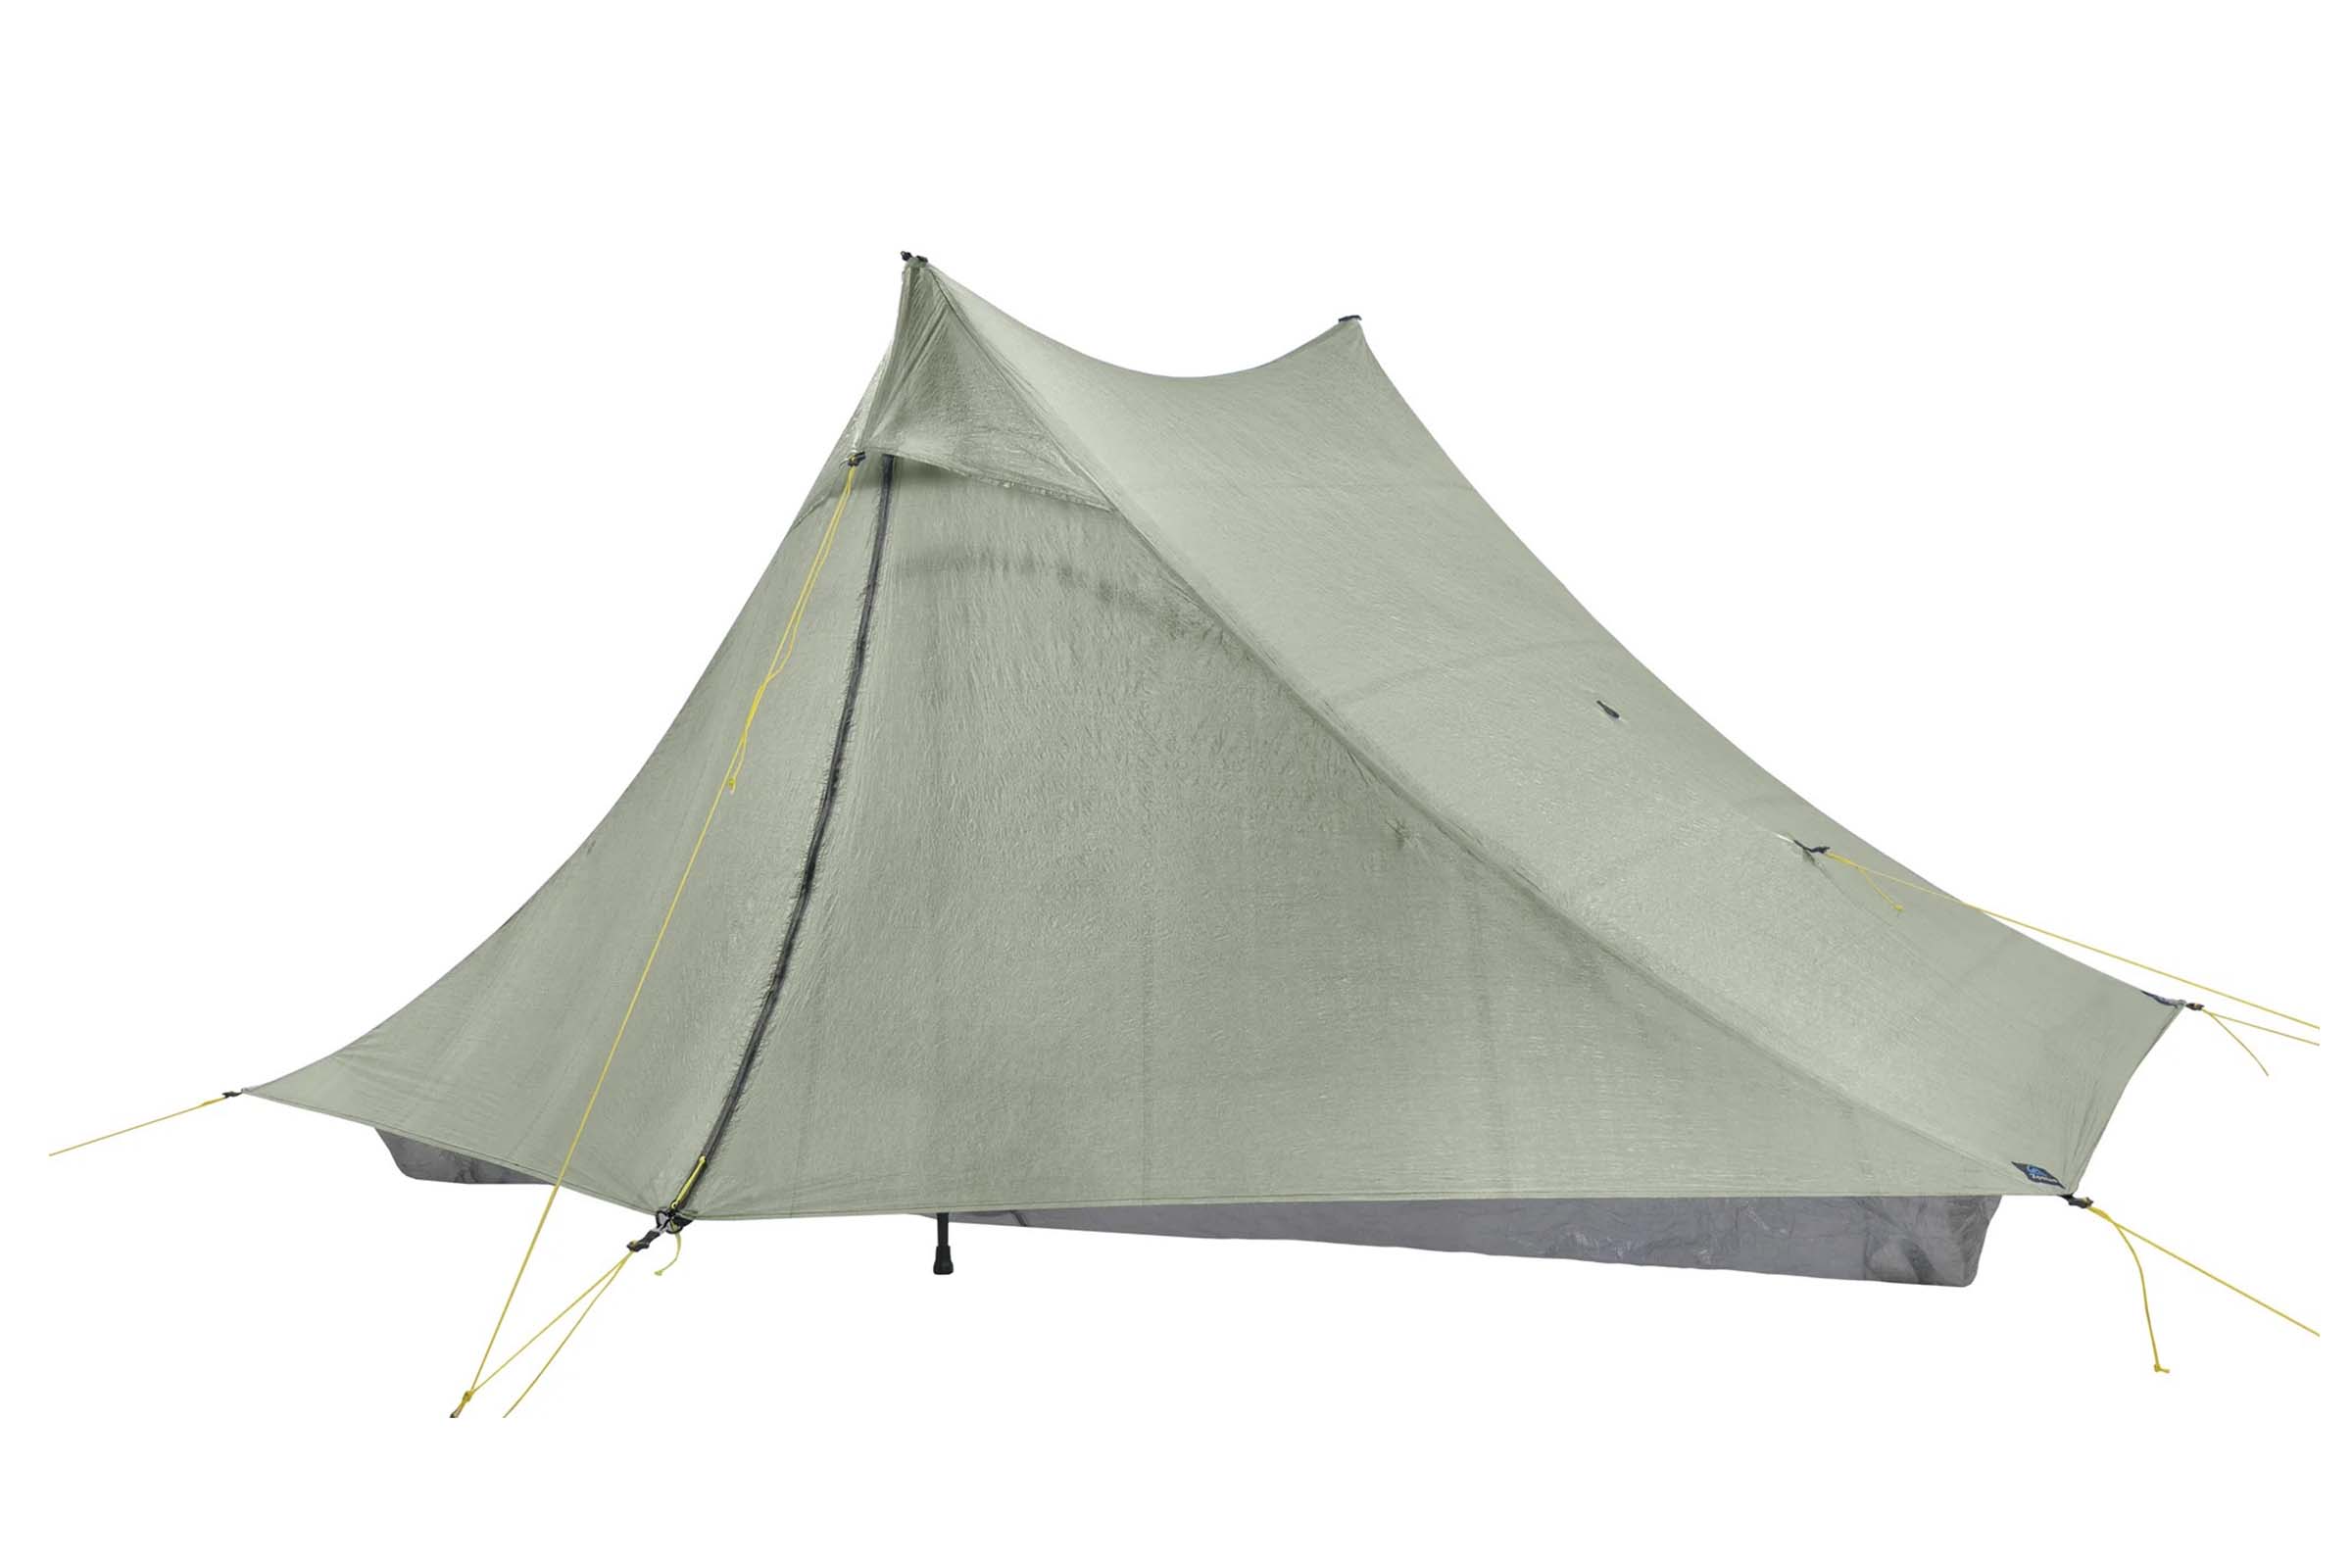 Luik halfrond test Zpacks Duplex Zip and Triplex Zip Tents - BIKEPACKING.com